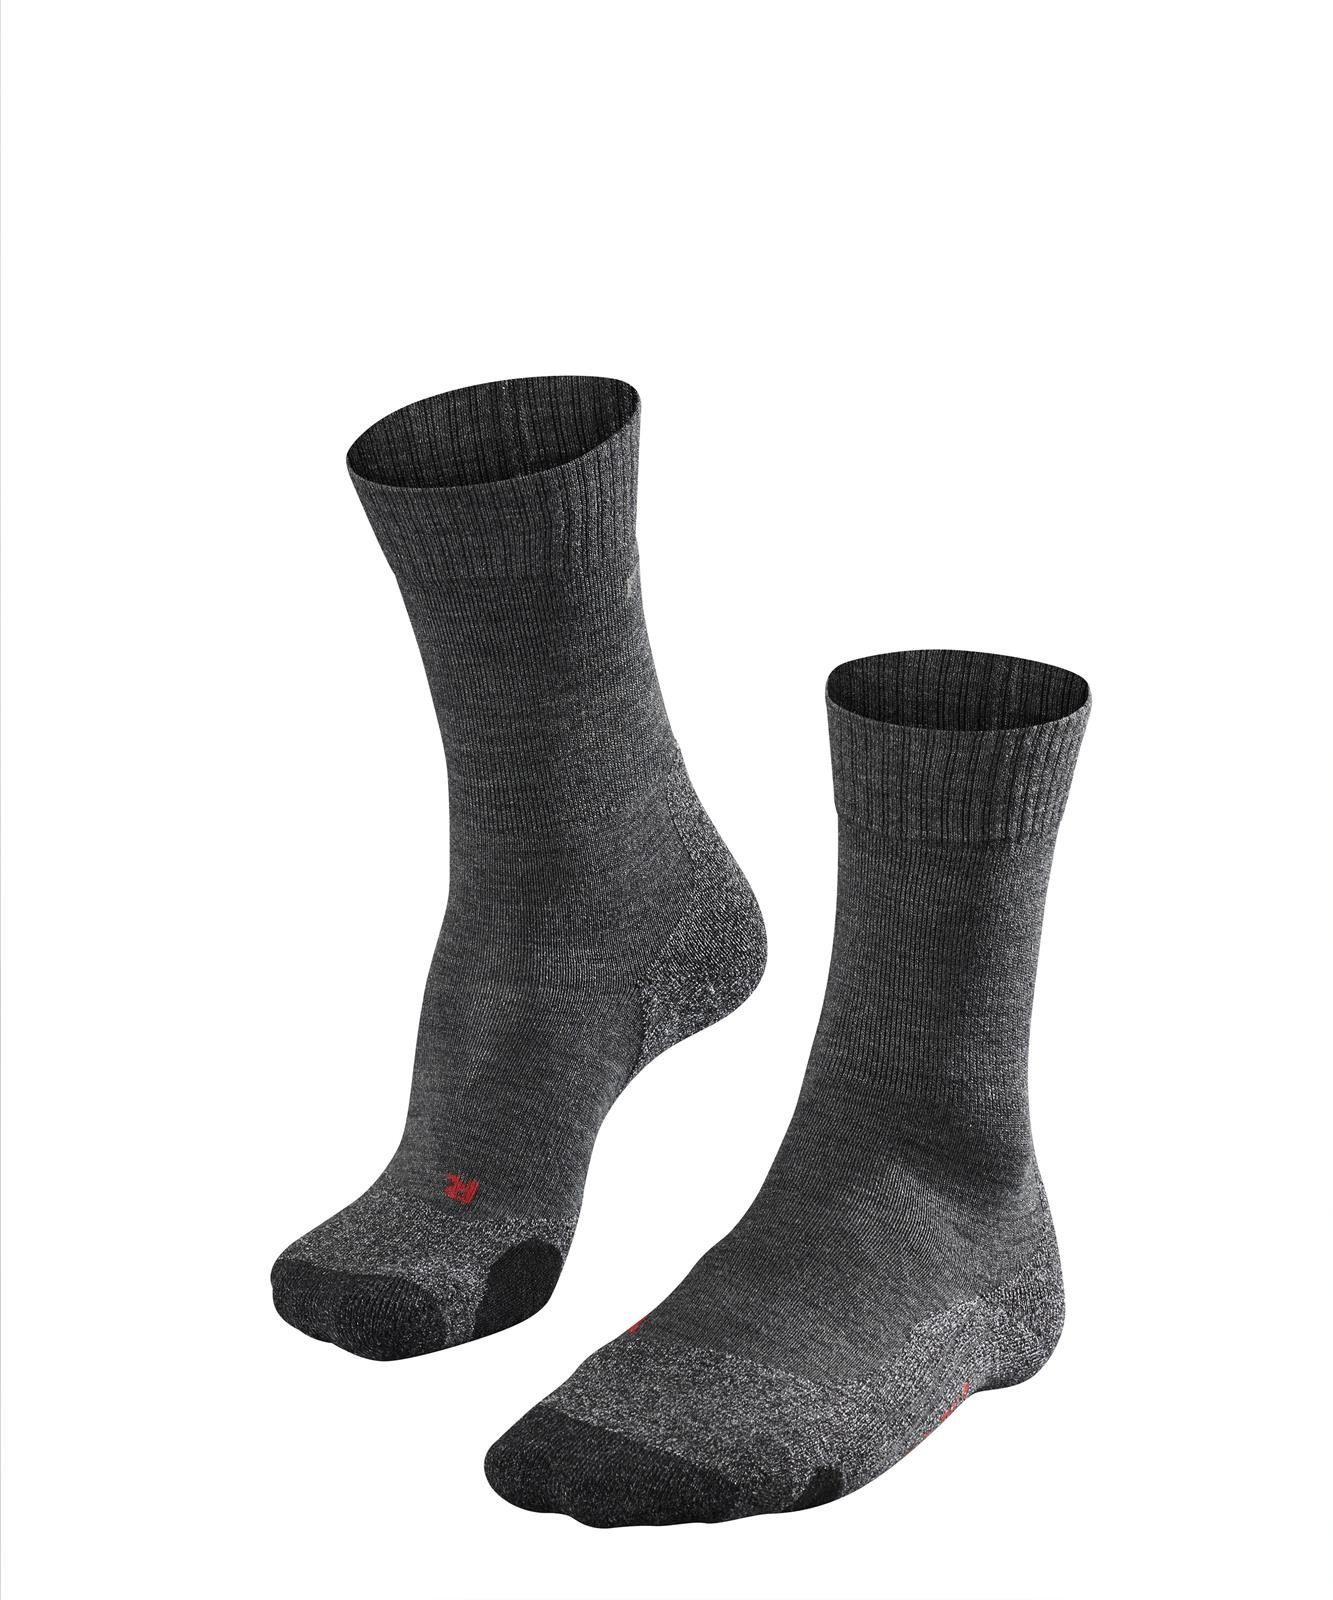 FALKE Sportsocken Herren Socken - Trekking Socken TK2, Polsterung Anthrazit (3180)